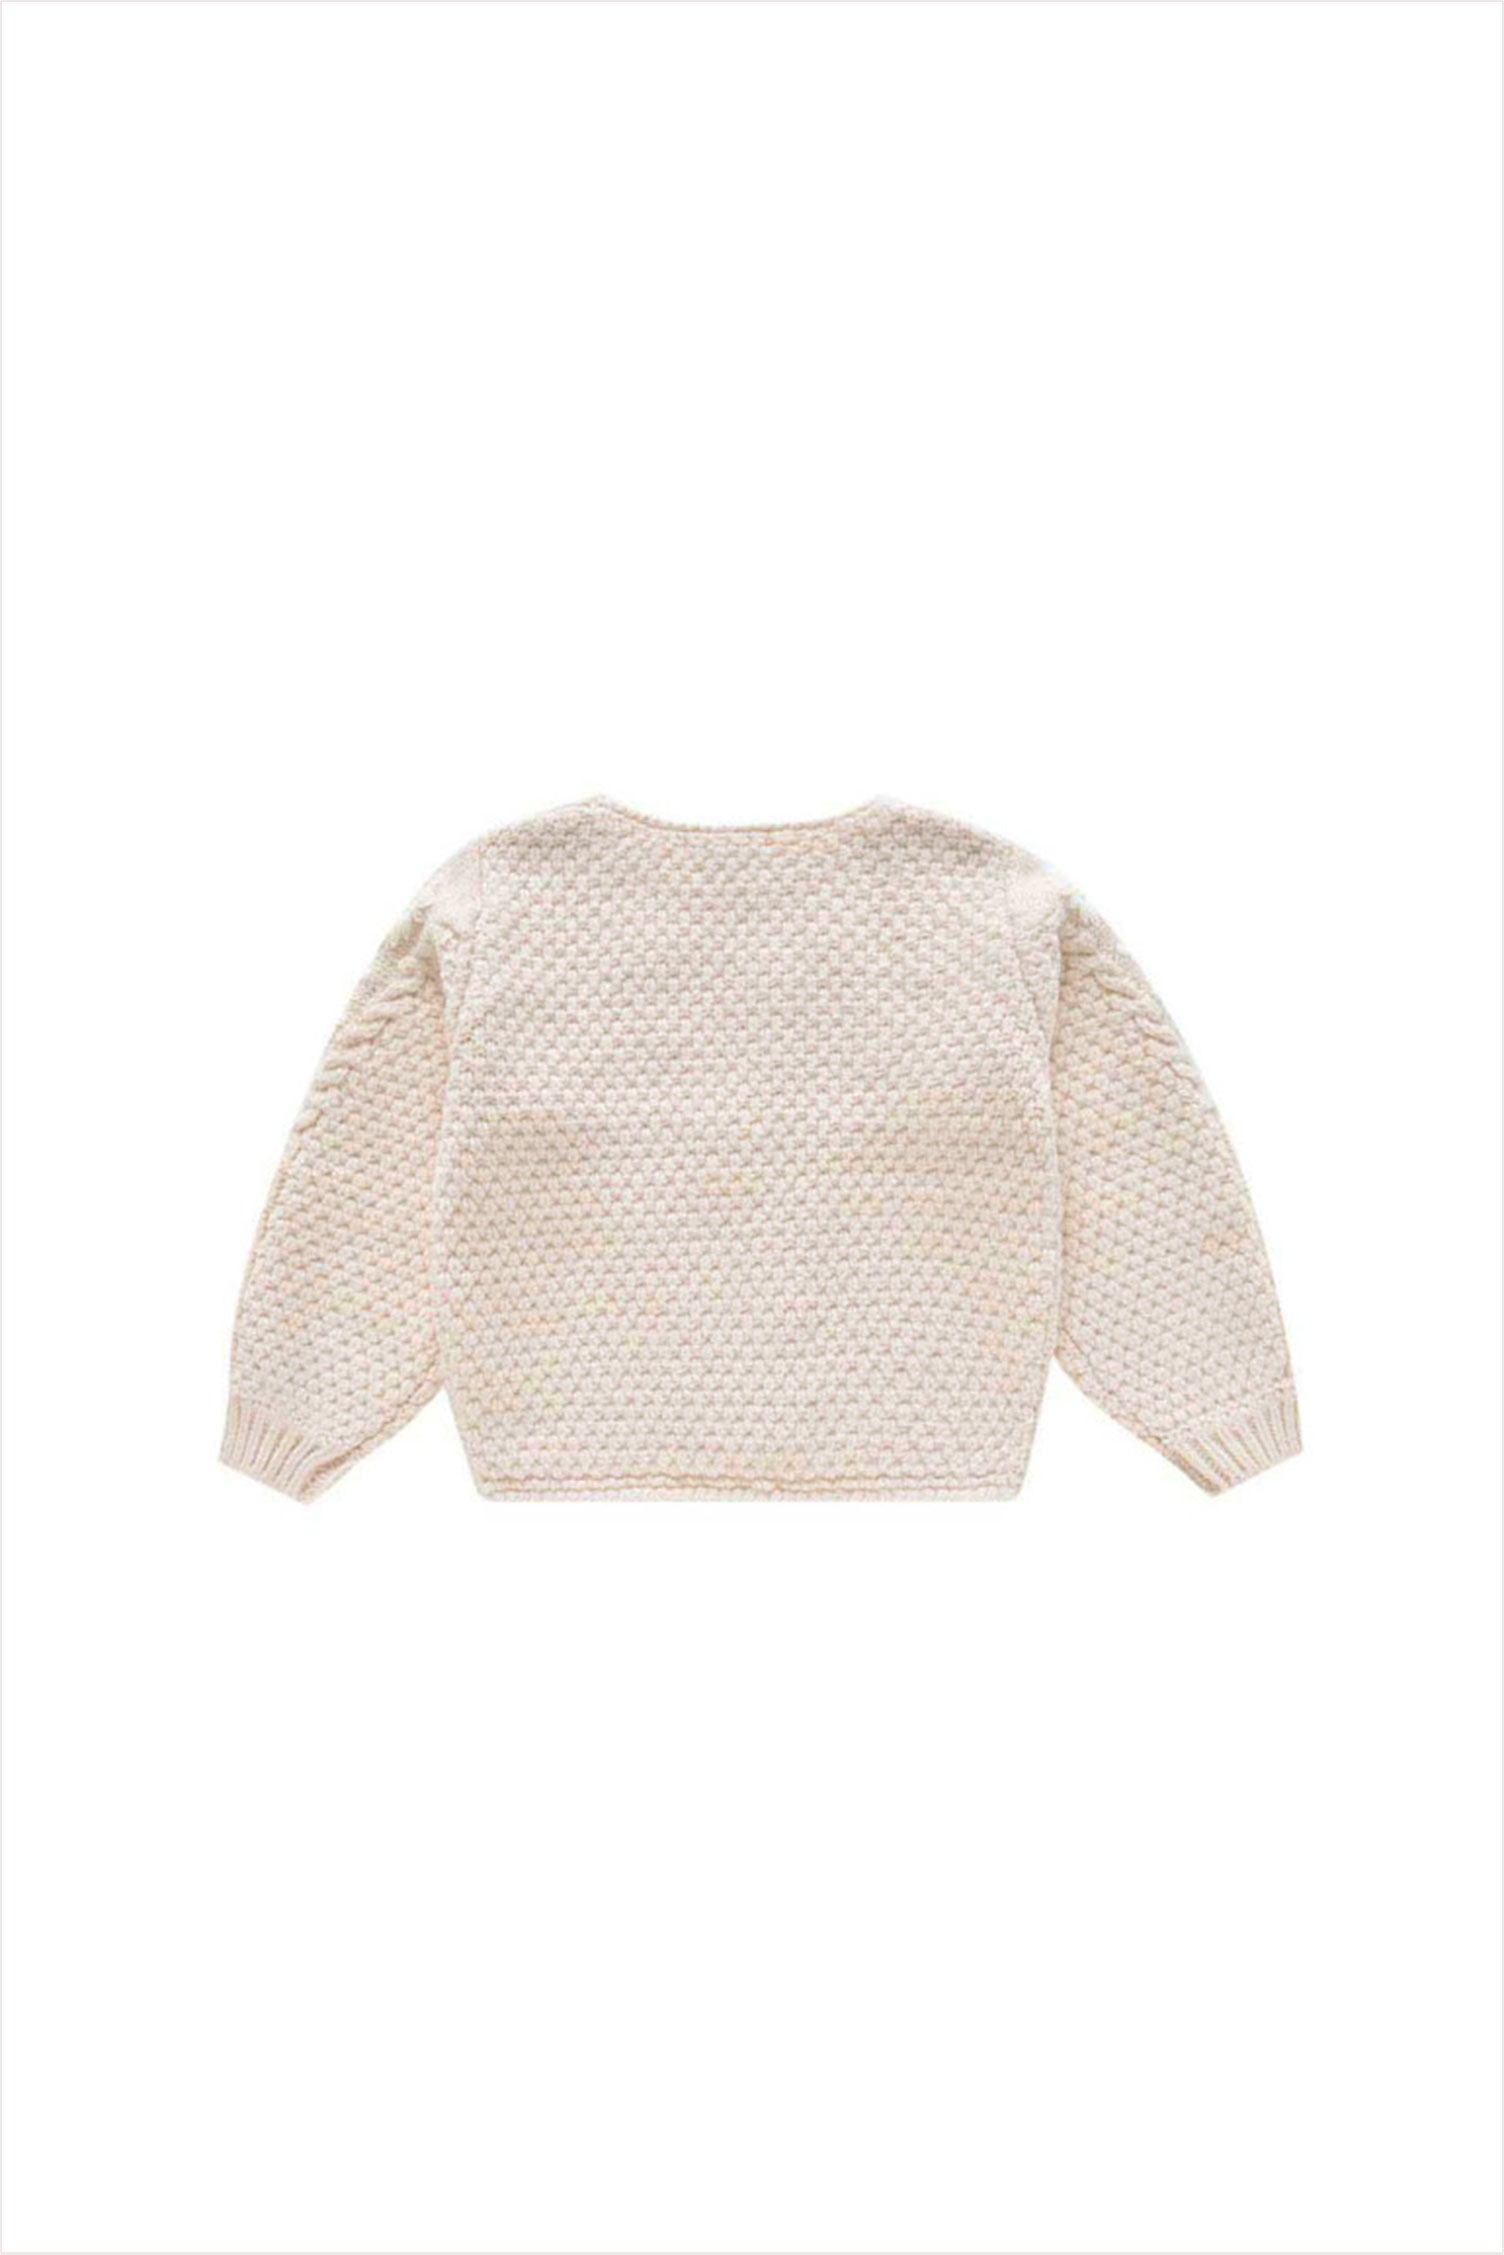 Acacia Children's Sweater Cream